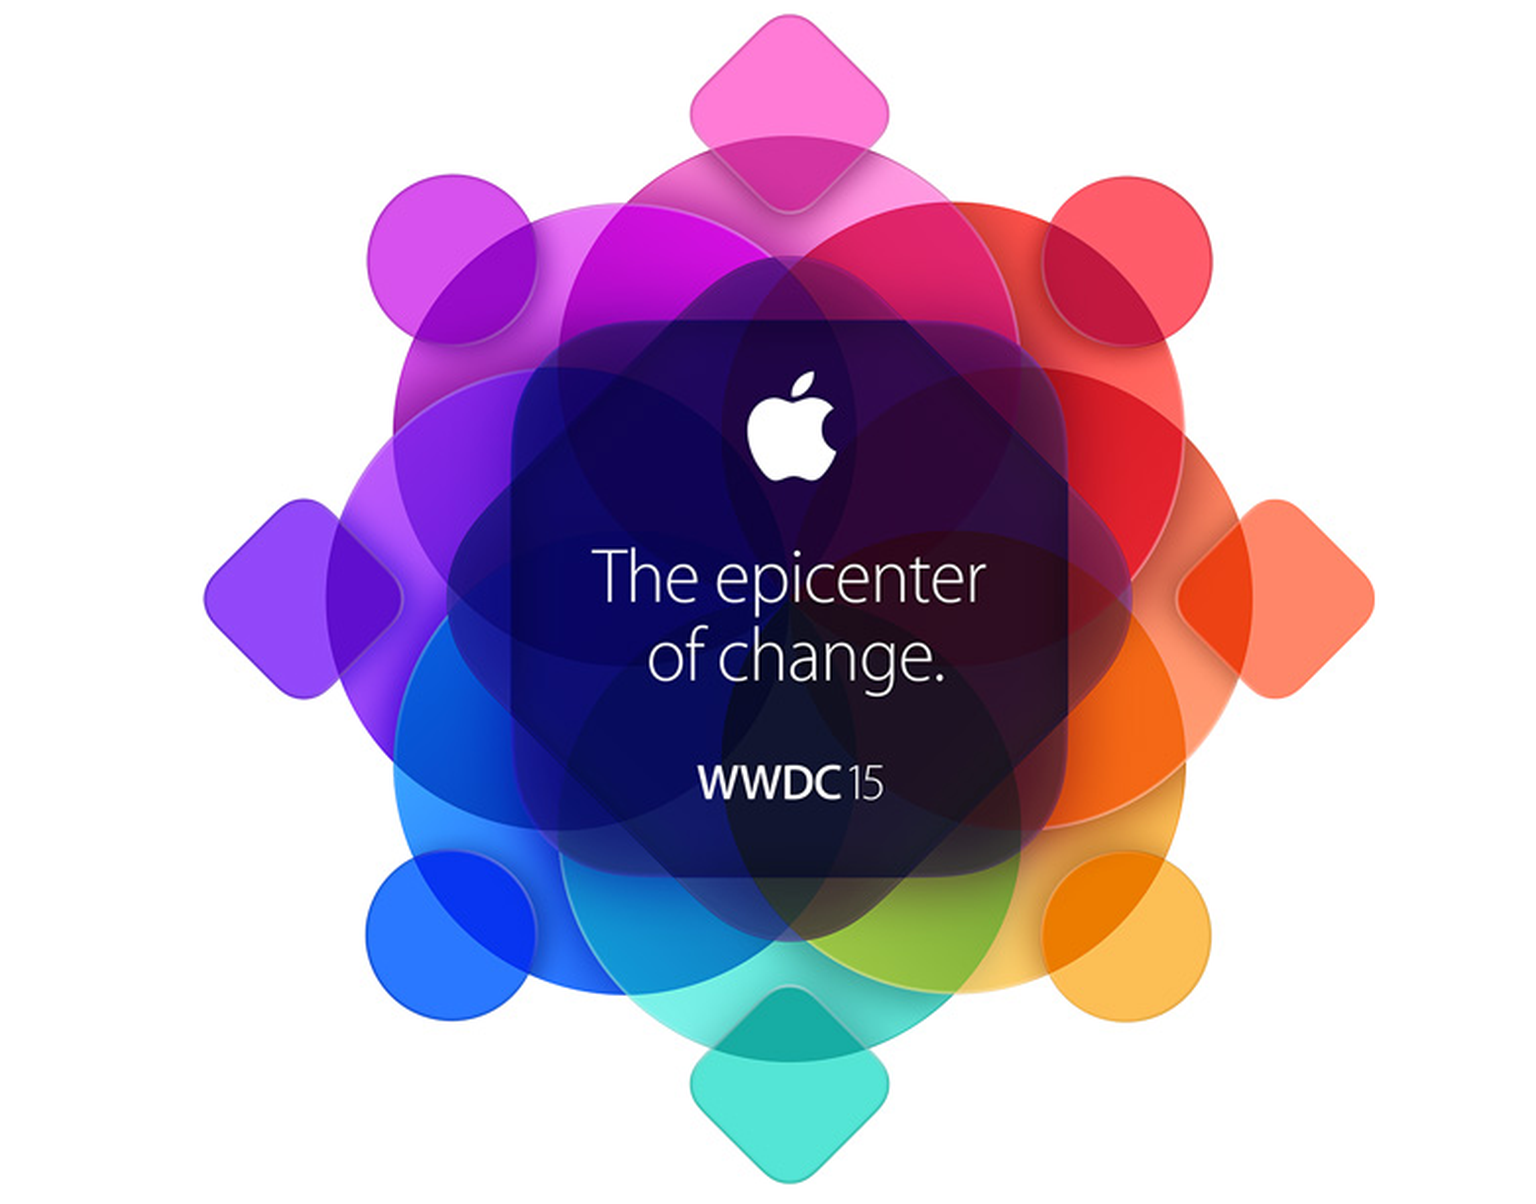 Gewohnt bescheiden ...: Das Motto der diesjährigen WWDC 2015 lautet «The epicenter of change».